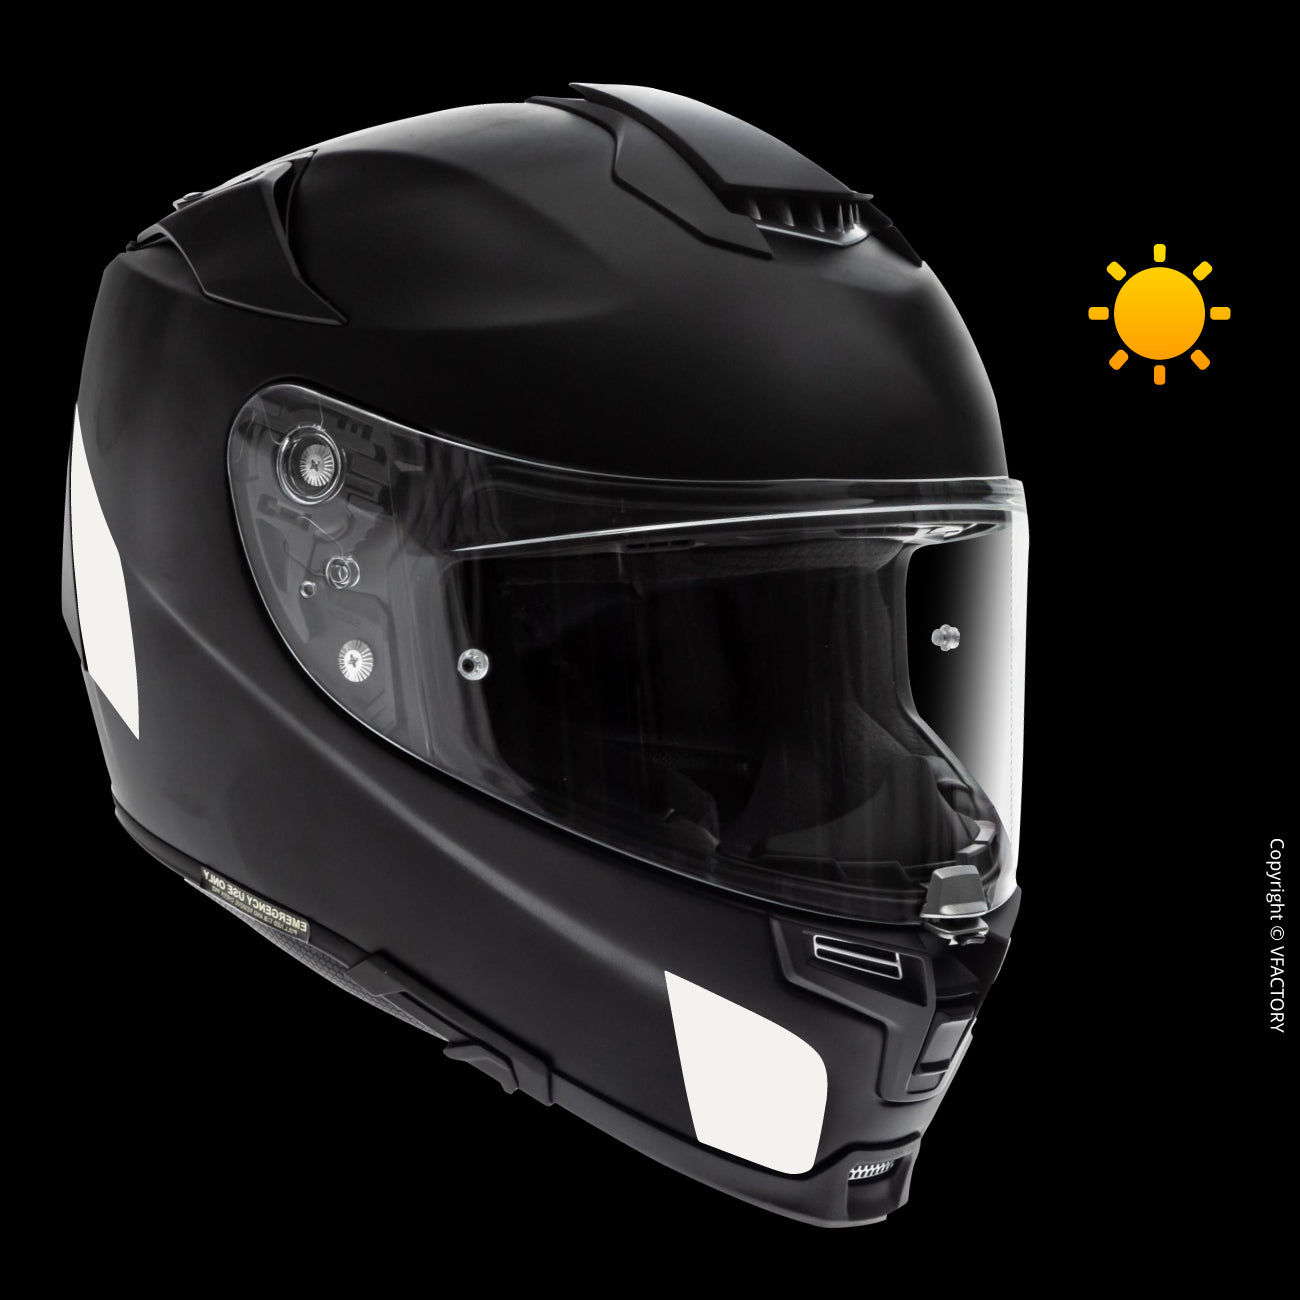 Autocollants réfléchissants noirs pour les casques moto HJC Helmets